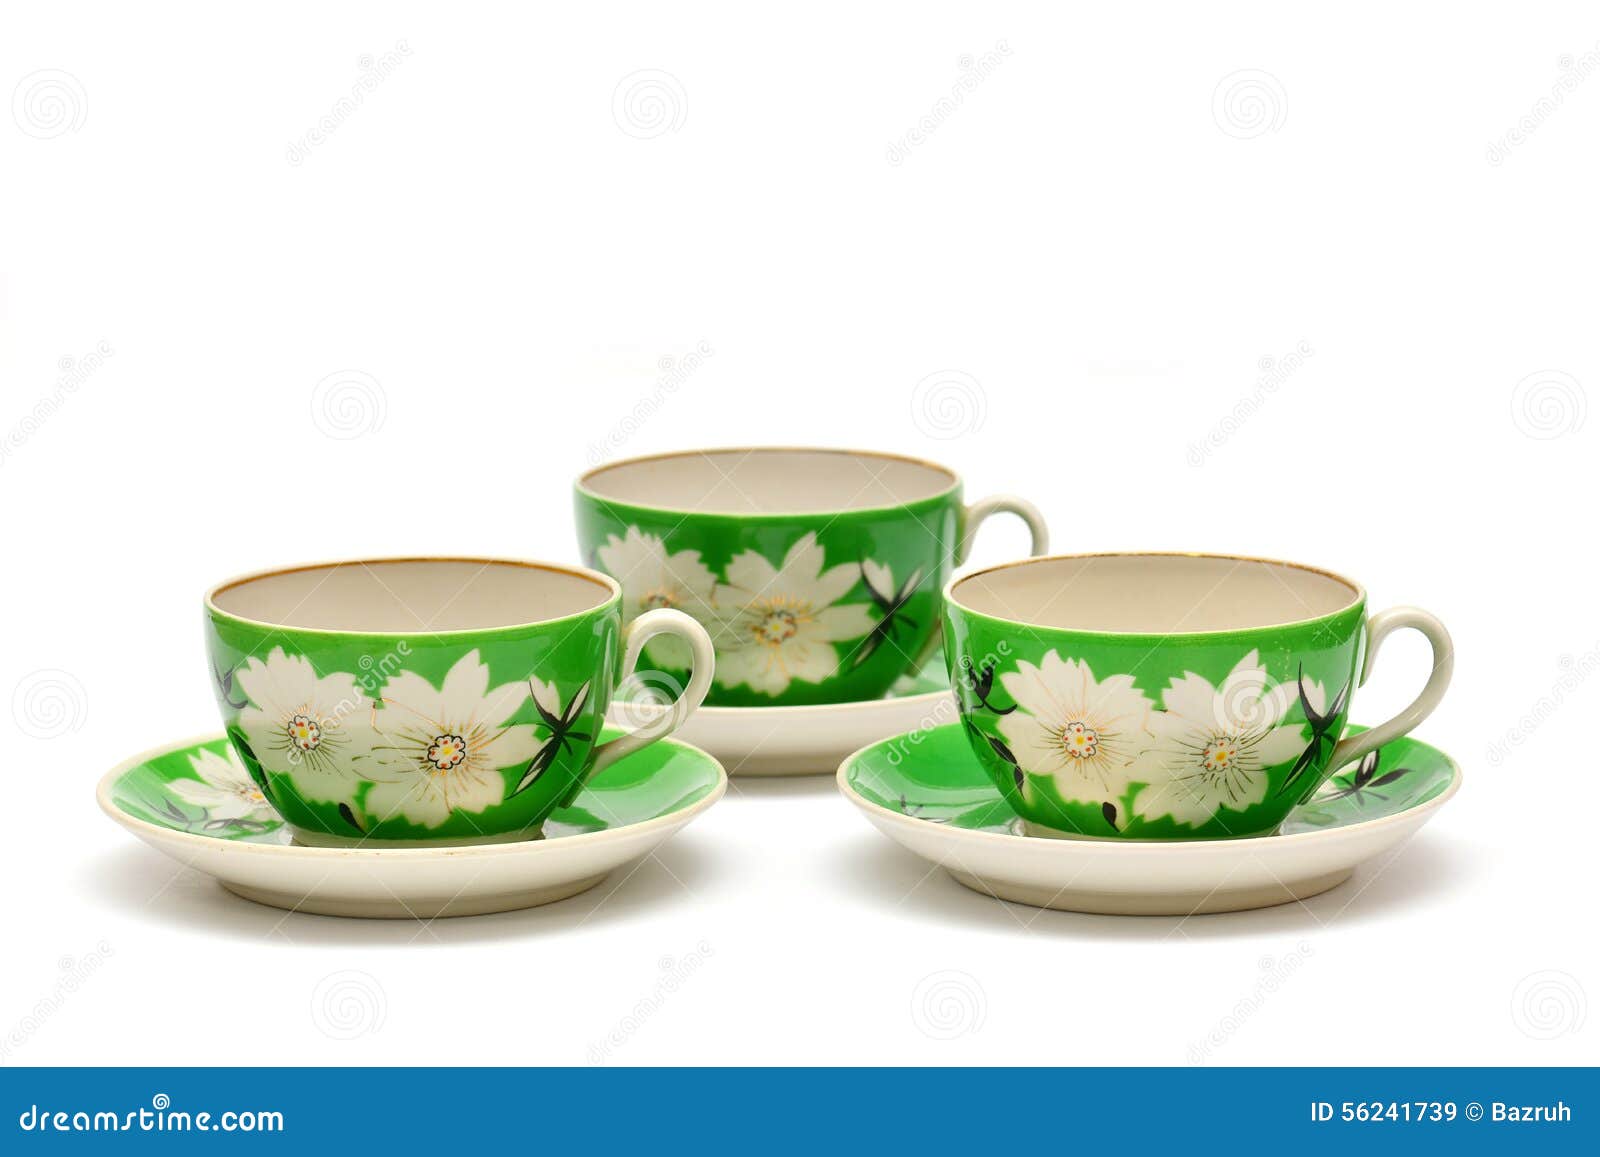 Vintage porcelain tea set stock image. Image of porcelain - 56241739